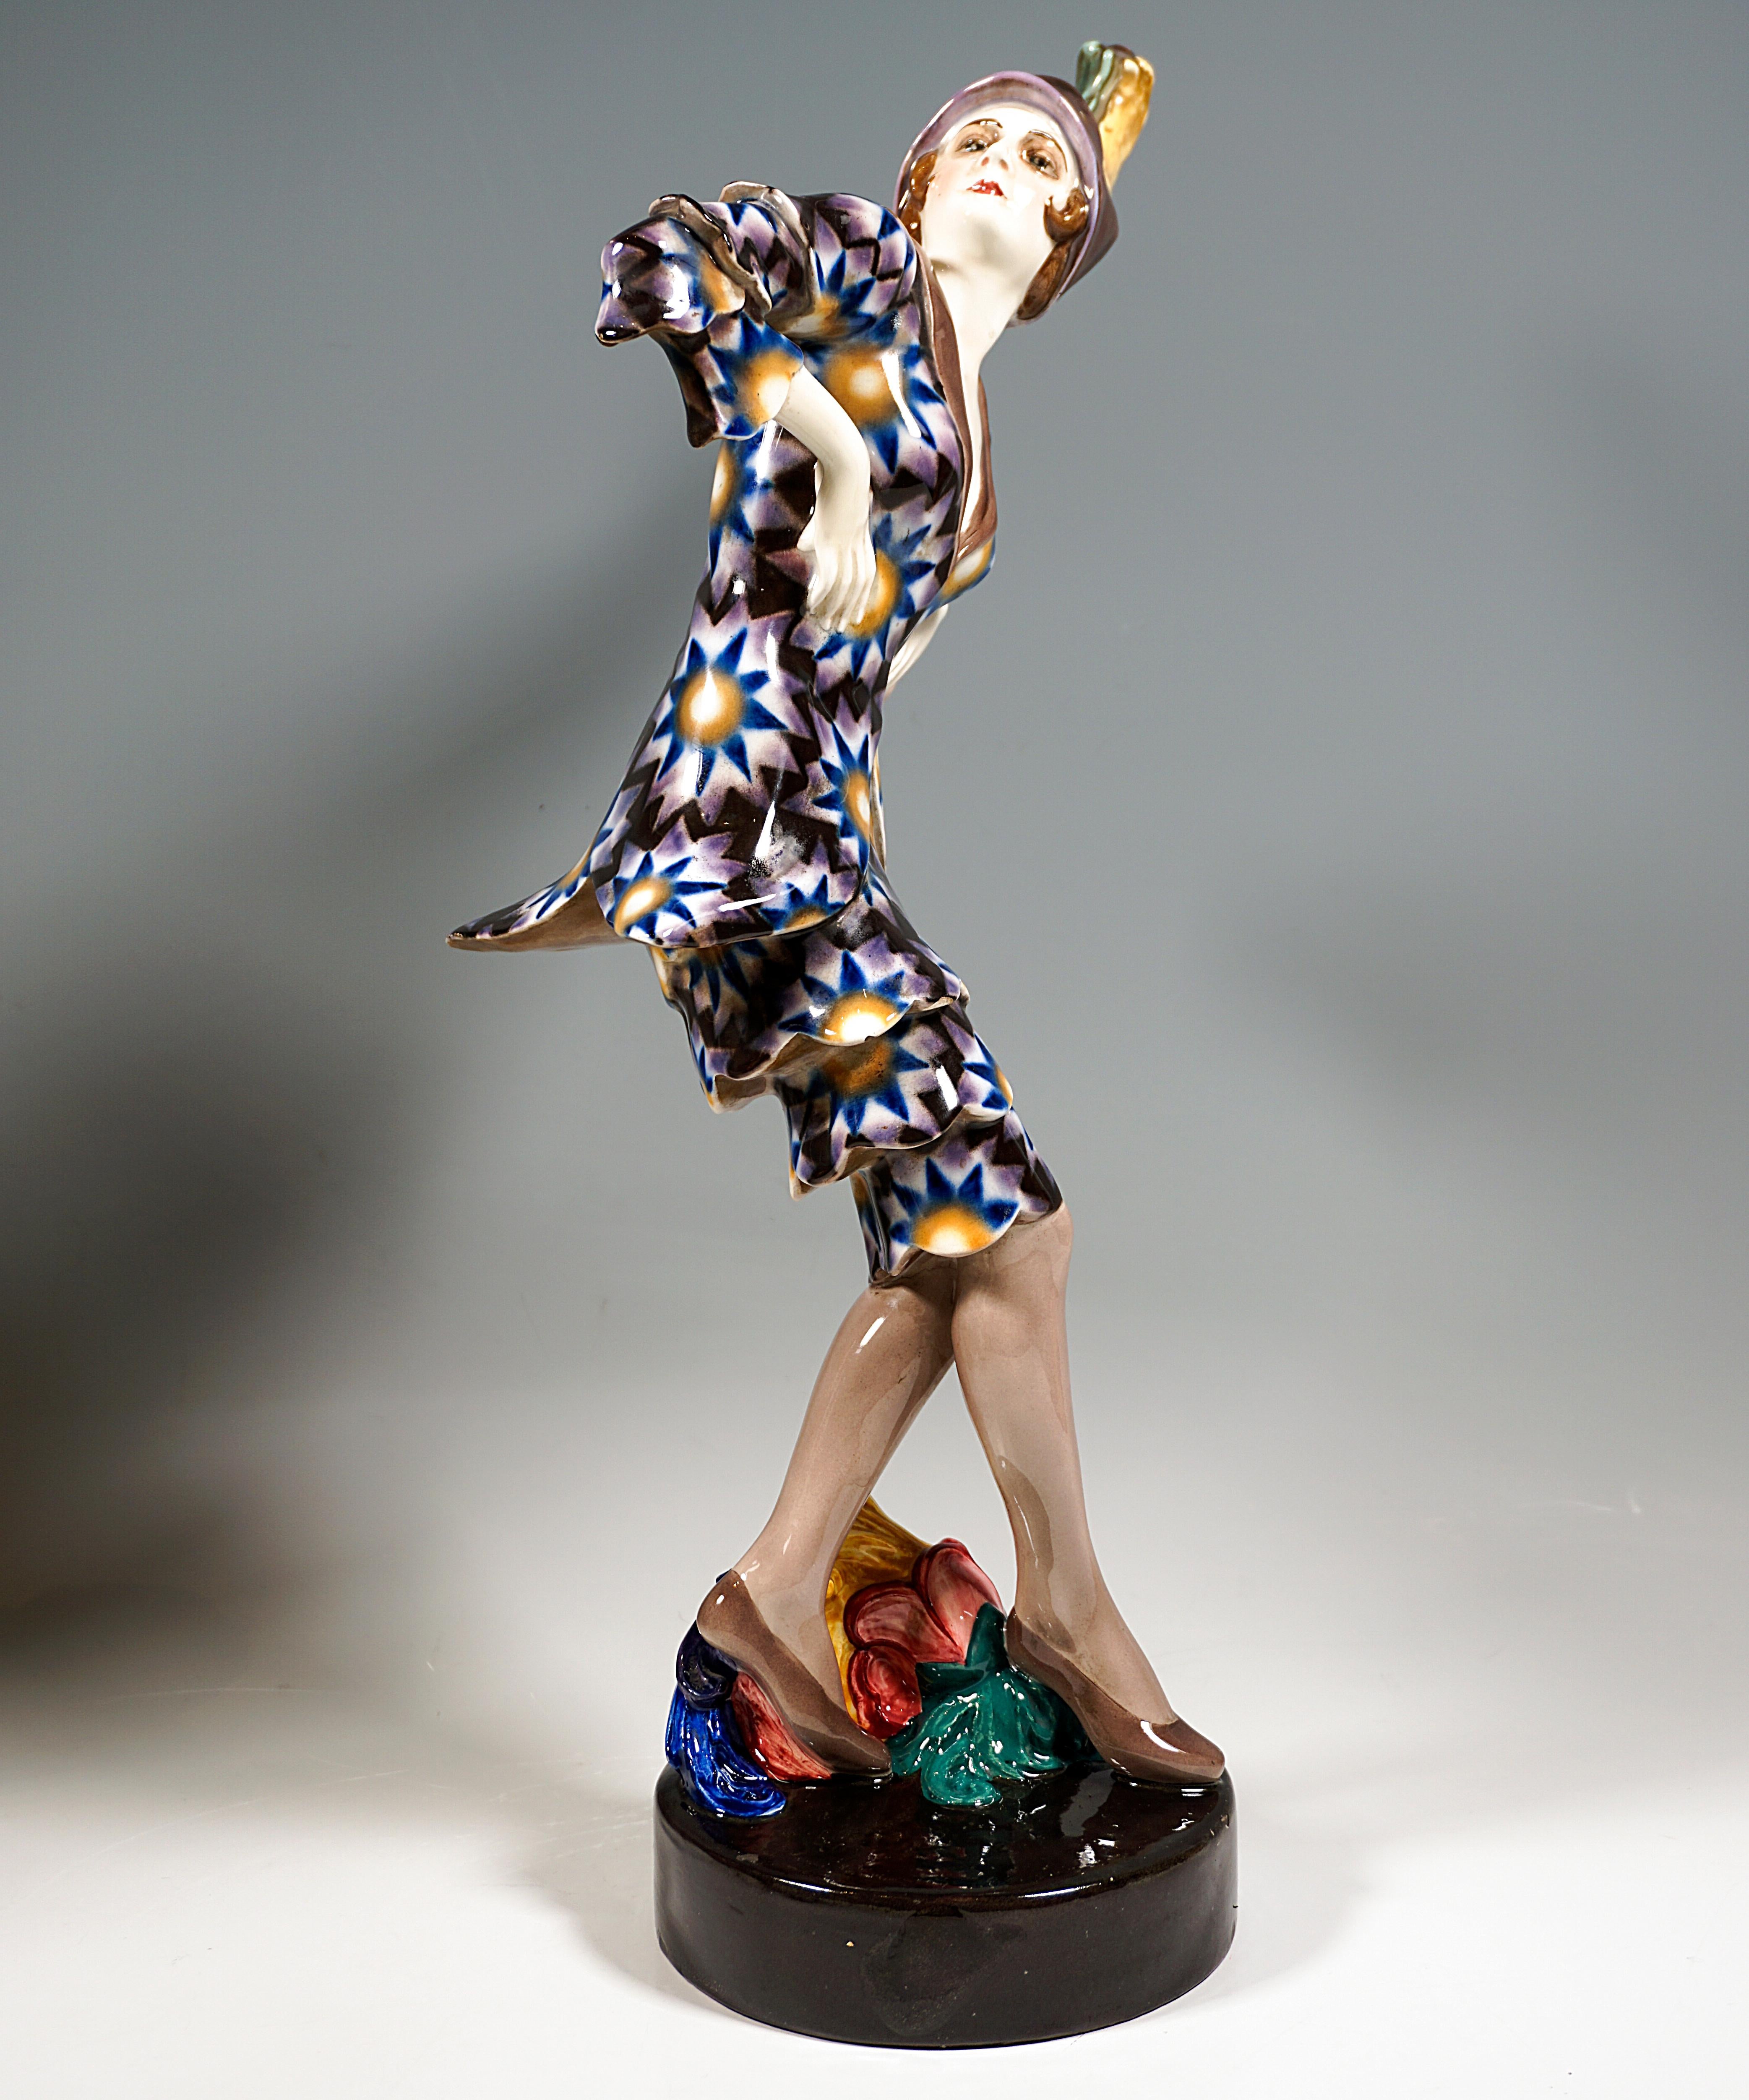 Seltenes Kunstkeramikmodell von Goldscheider aus den 1920er Jahren:
Darstellung der Tänzerin Lucie Kieselhausen in einem exotischen Kostüm, bestehend aus Jacke und knielangem Rock mit Sternendekor in Braun, Blau und Gelb, Ärmel und Rockteil mit